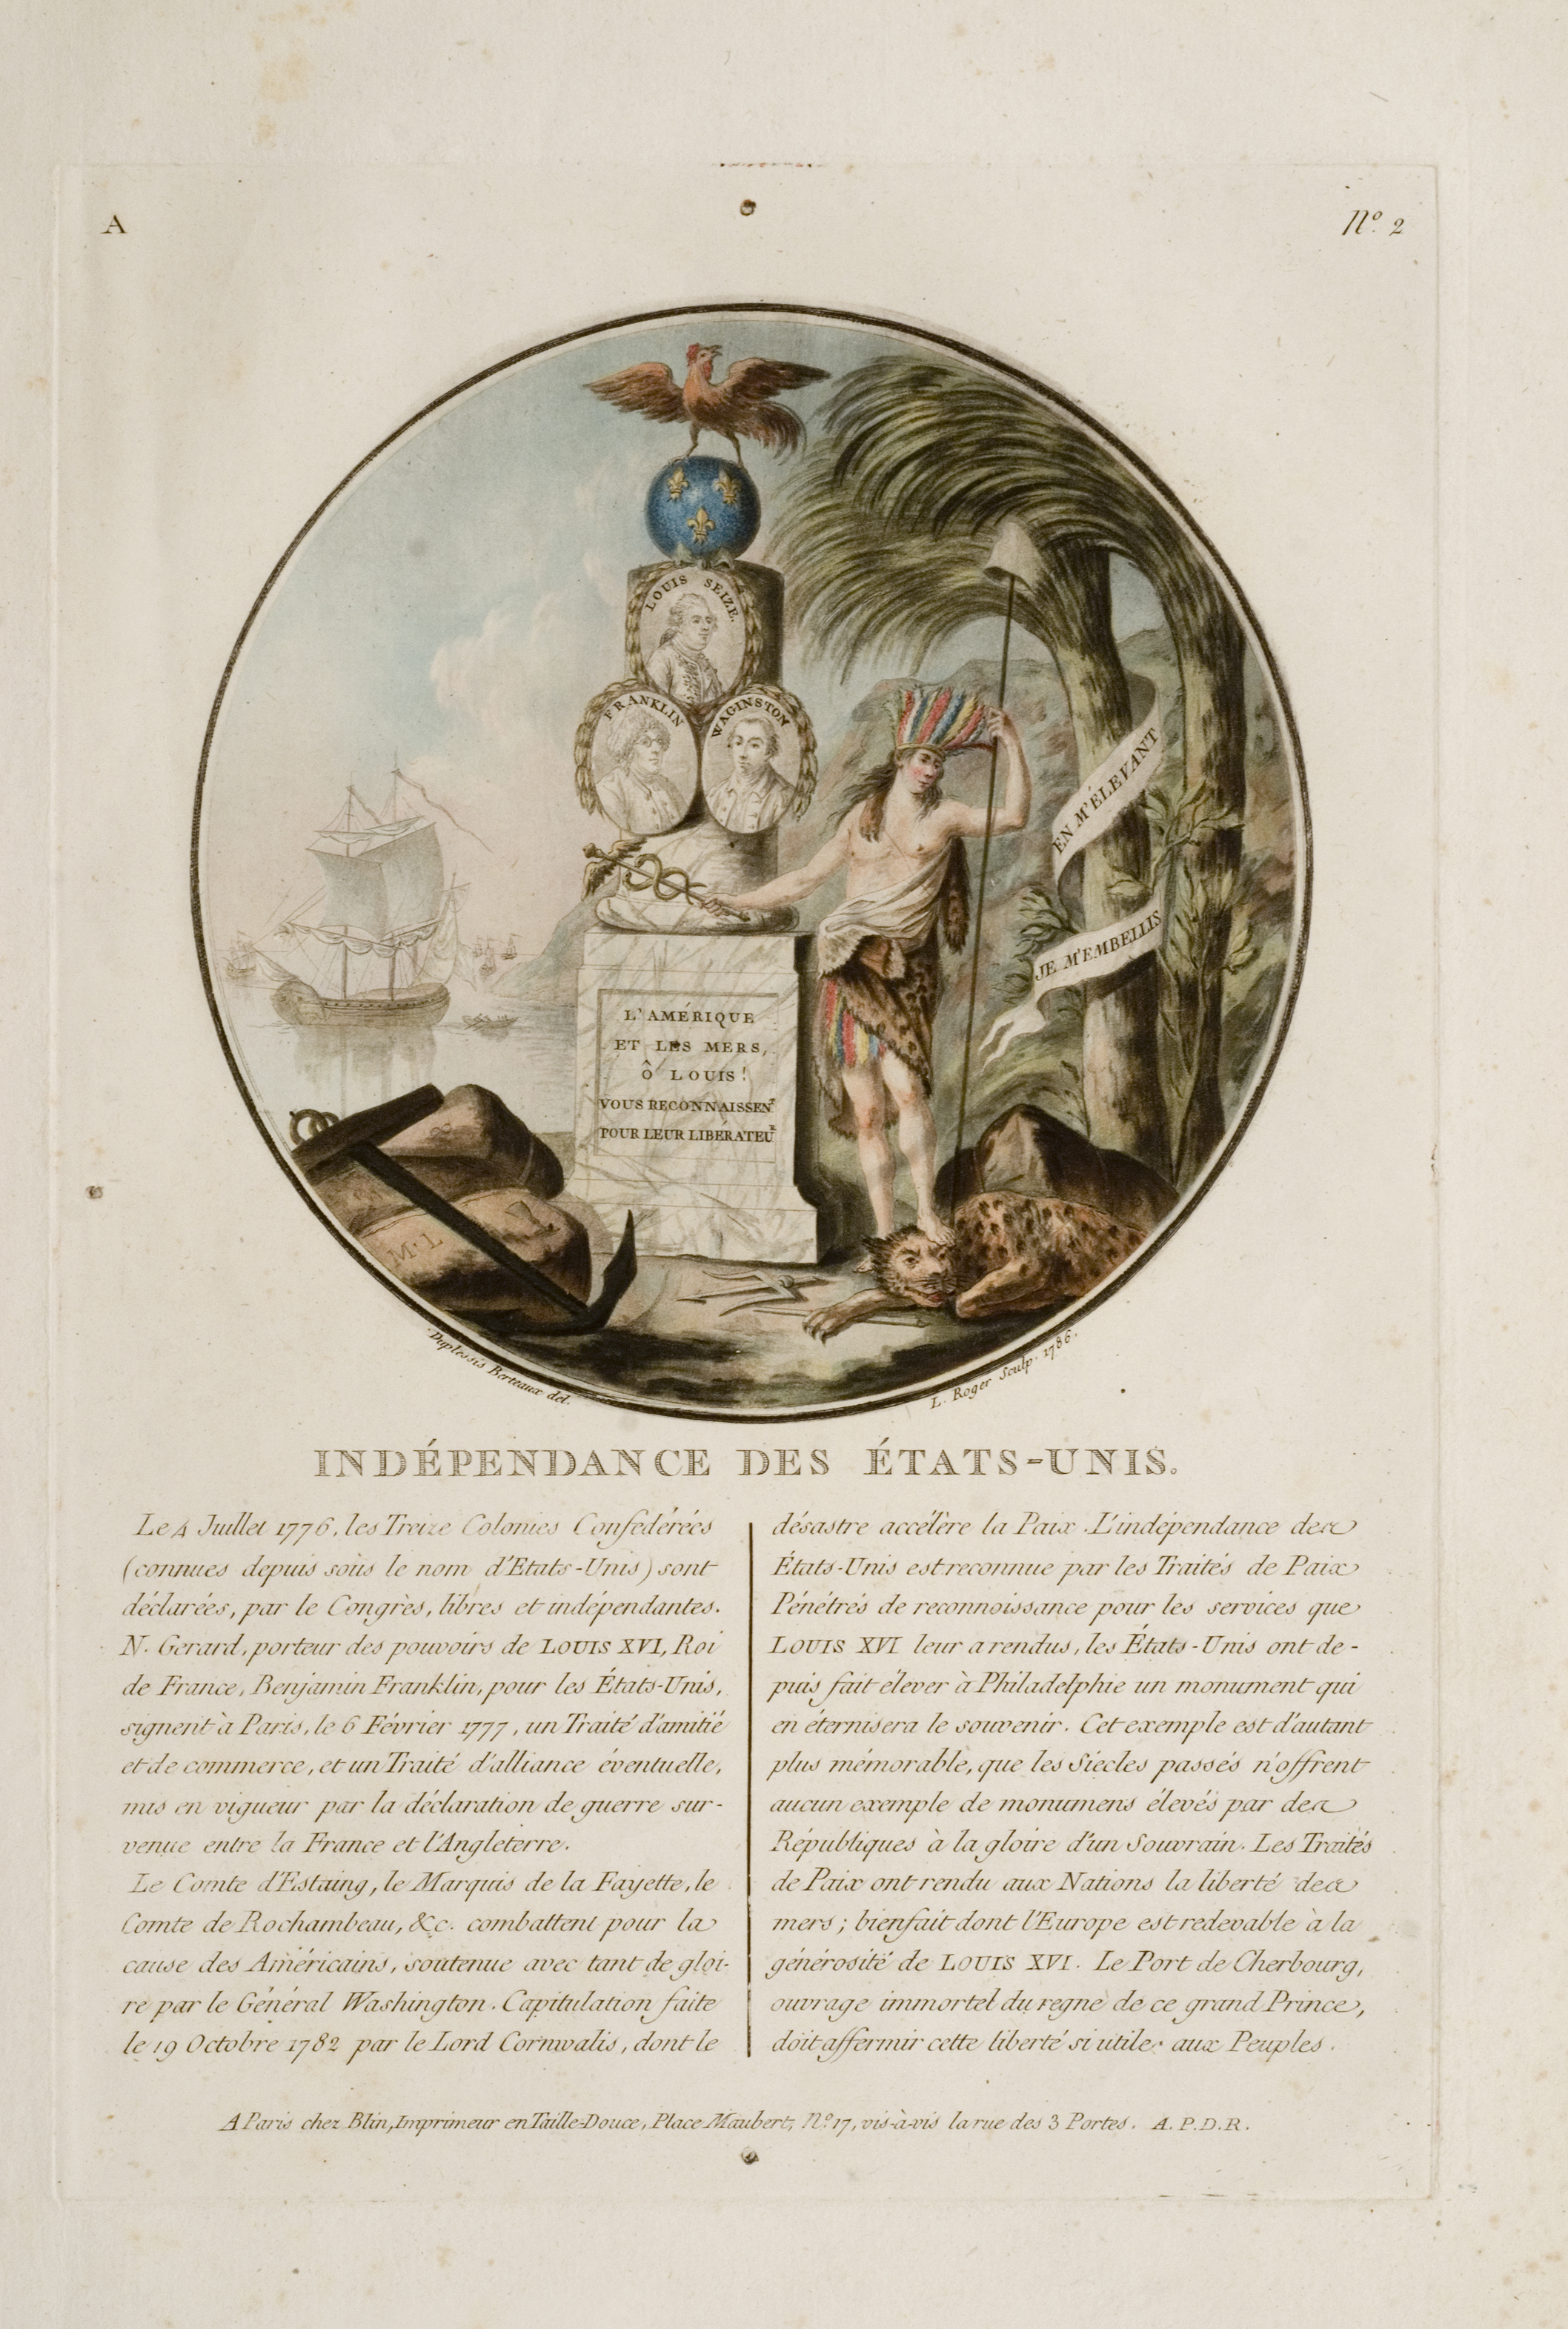 Indépendance des États-Unis, L. Roger, engraver; after Jean Duplessis-Bertaux, artist, Paris: Chez Blin, 1786